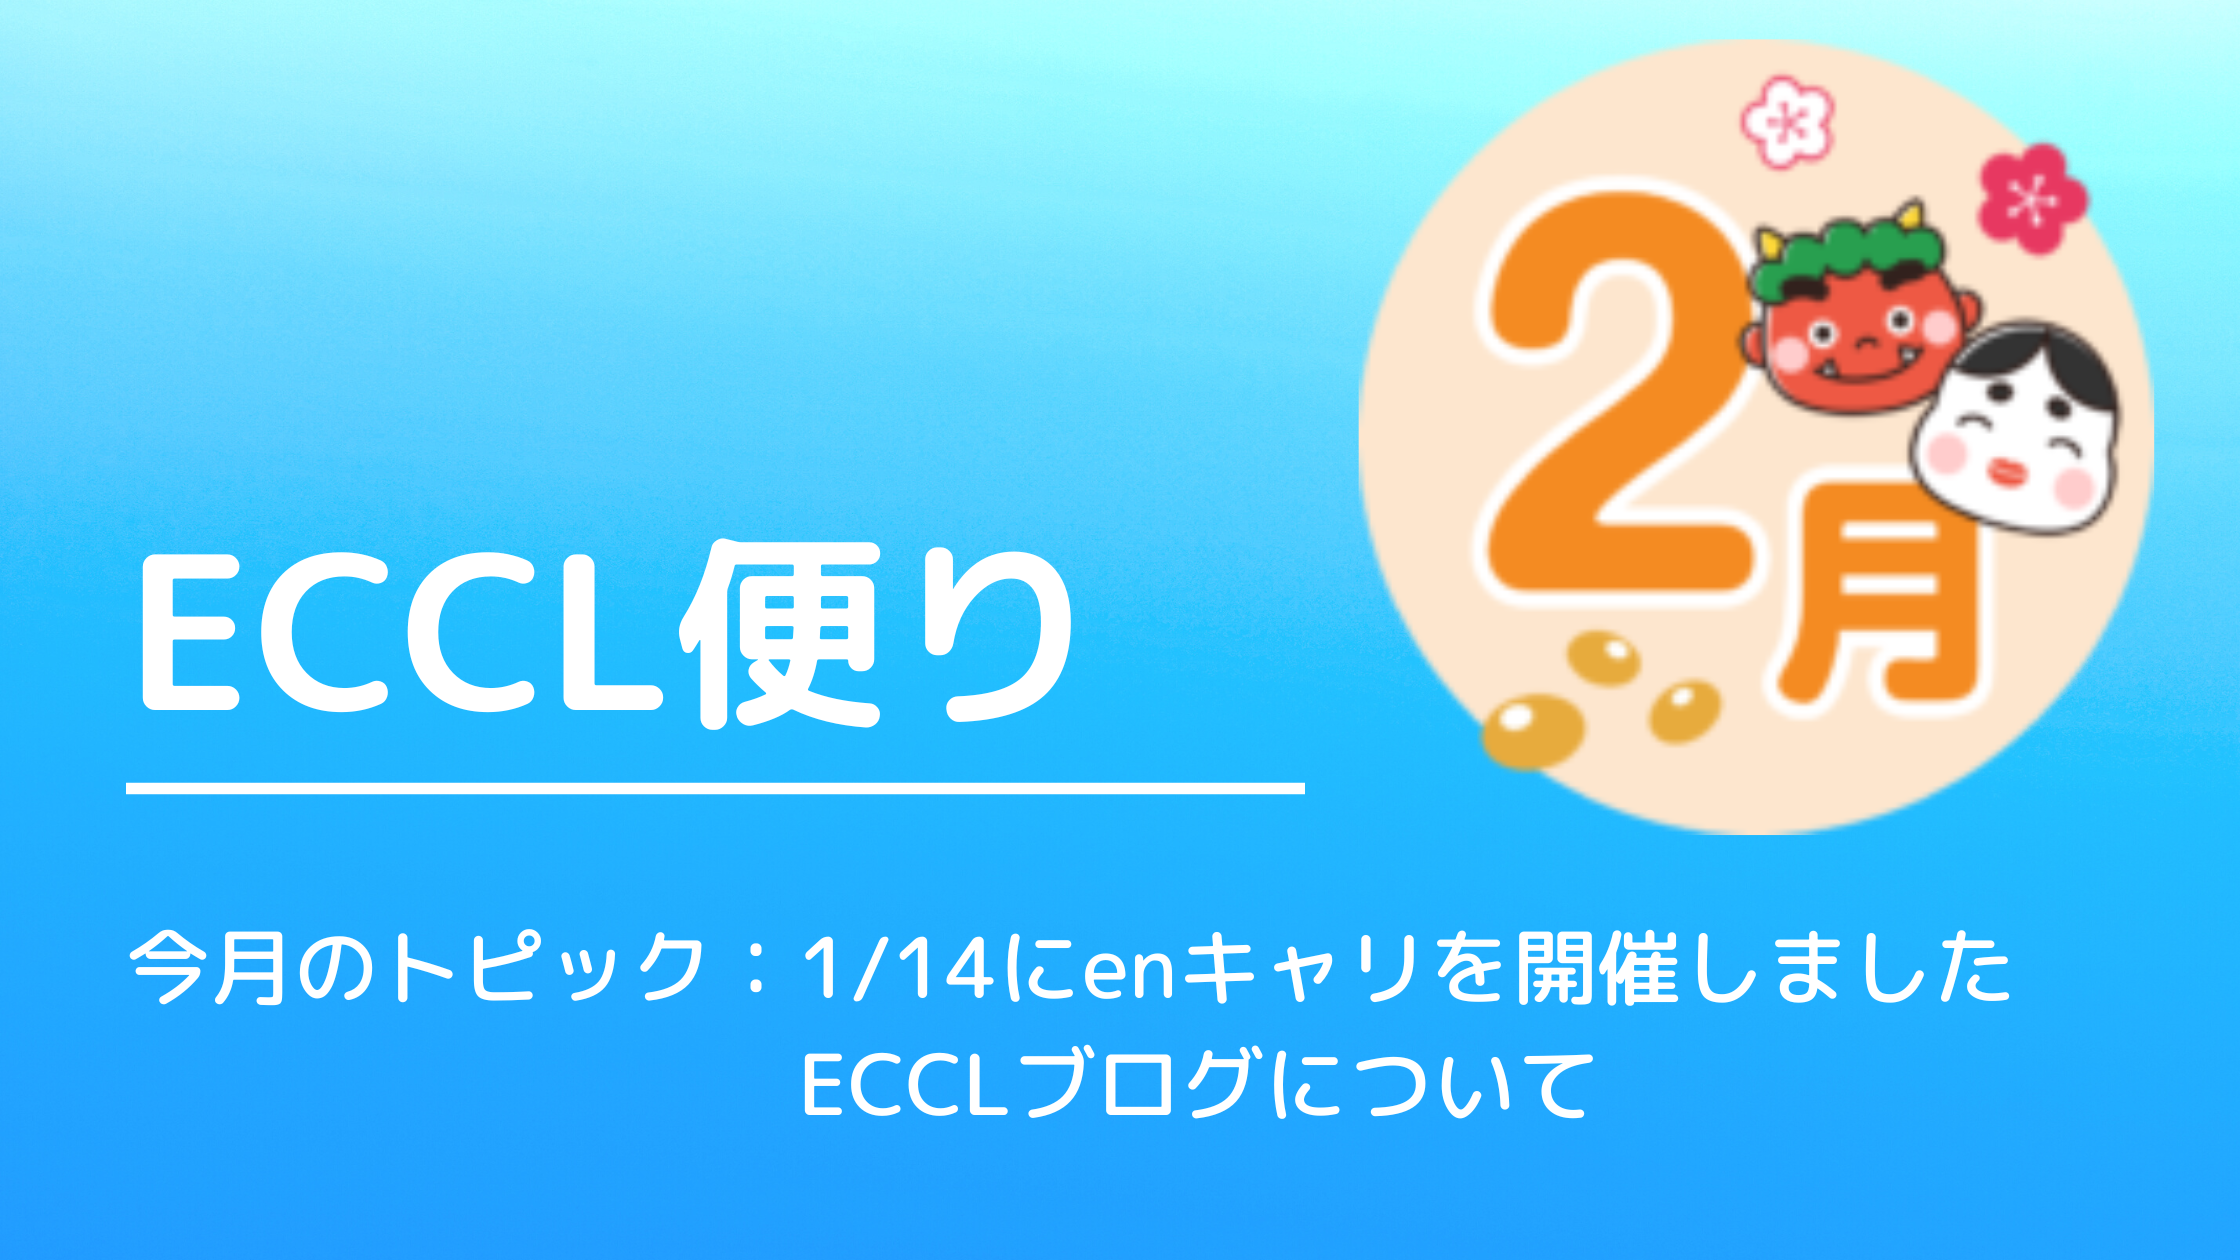 ECCL便り8月号♪